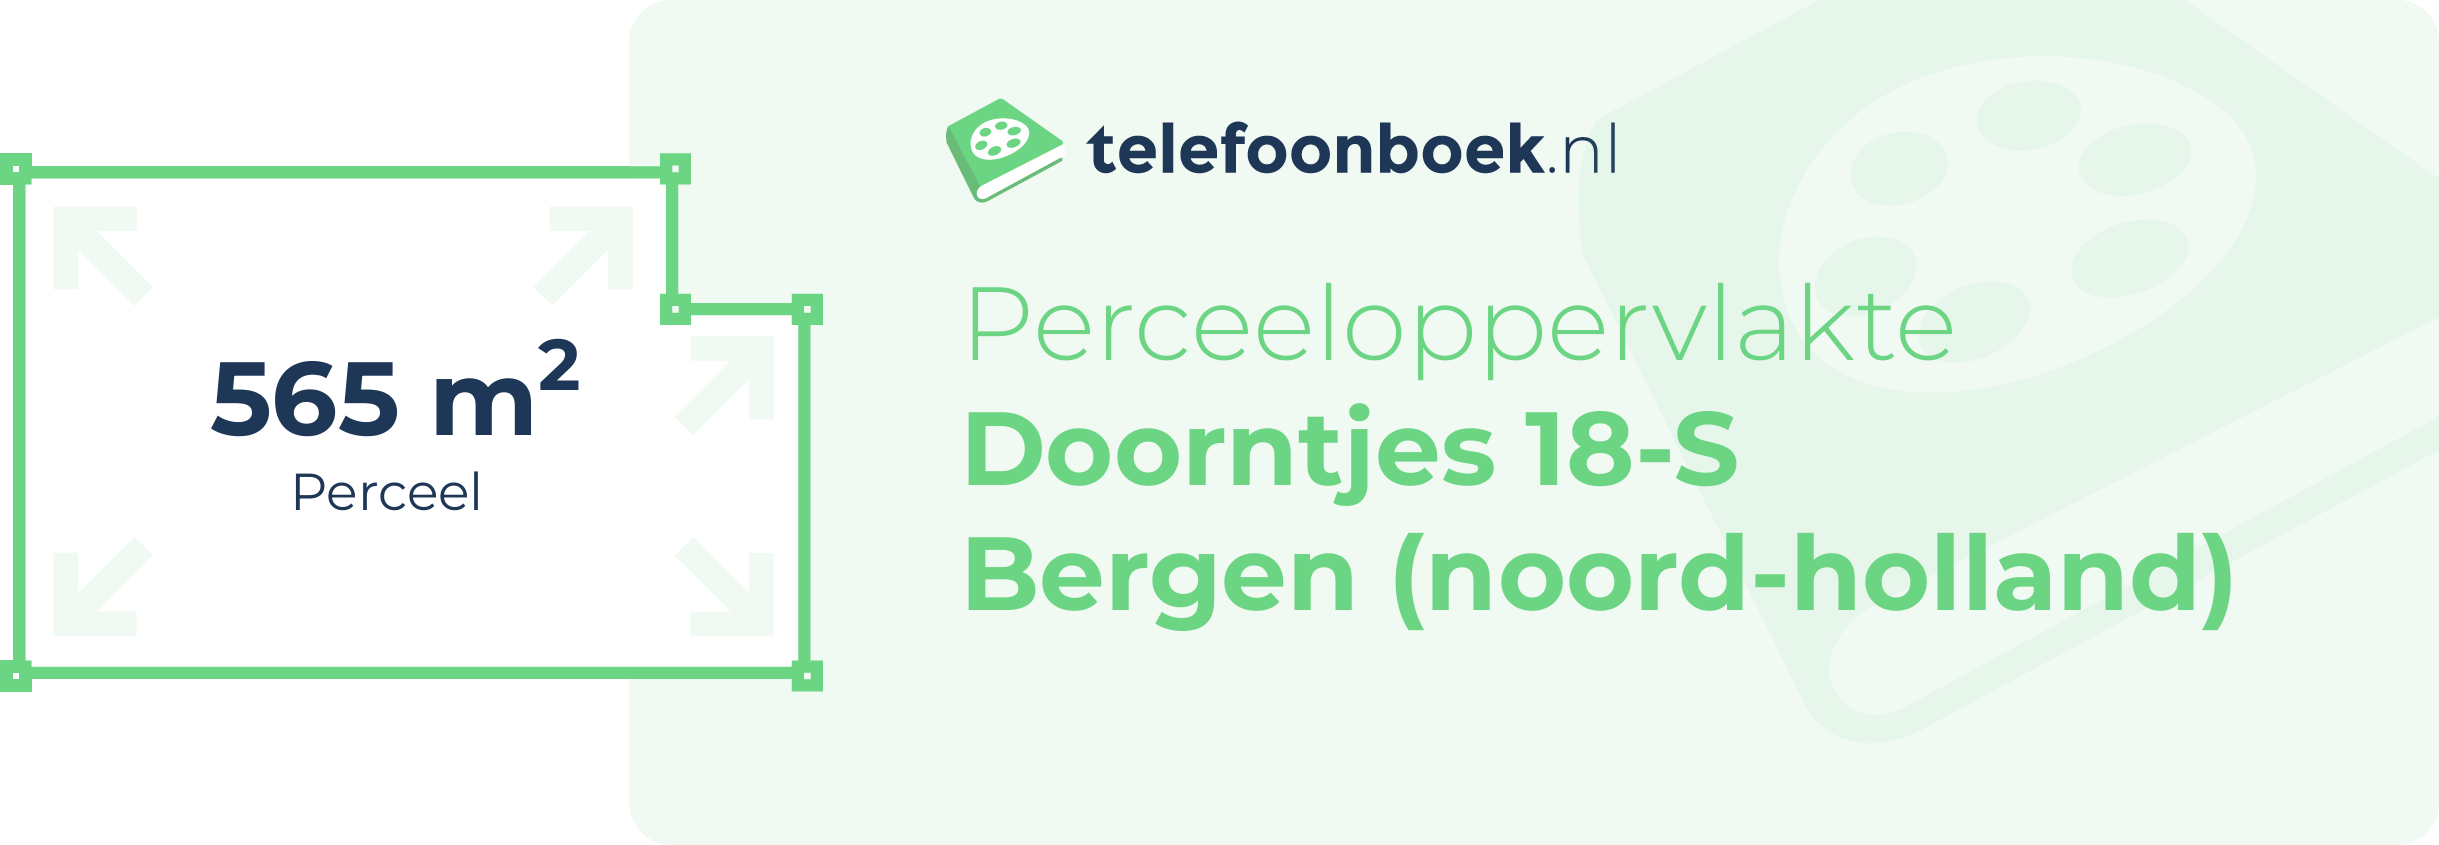 Perceeloppervlakte Doorntjes 18-S Bergen (Noord-Holland)